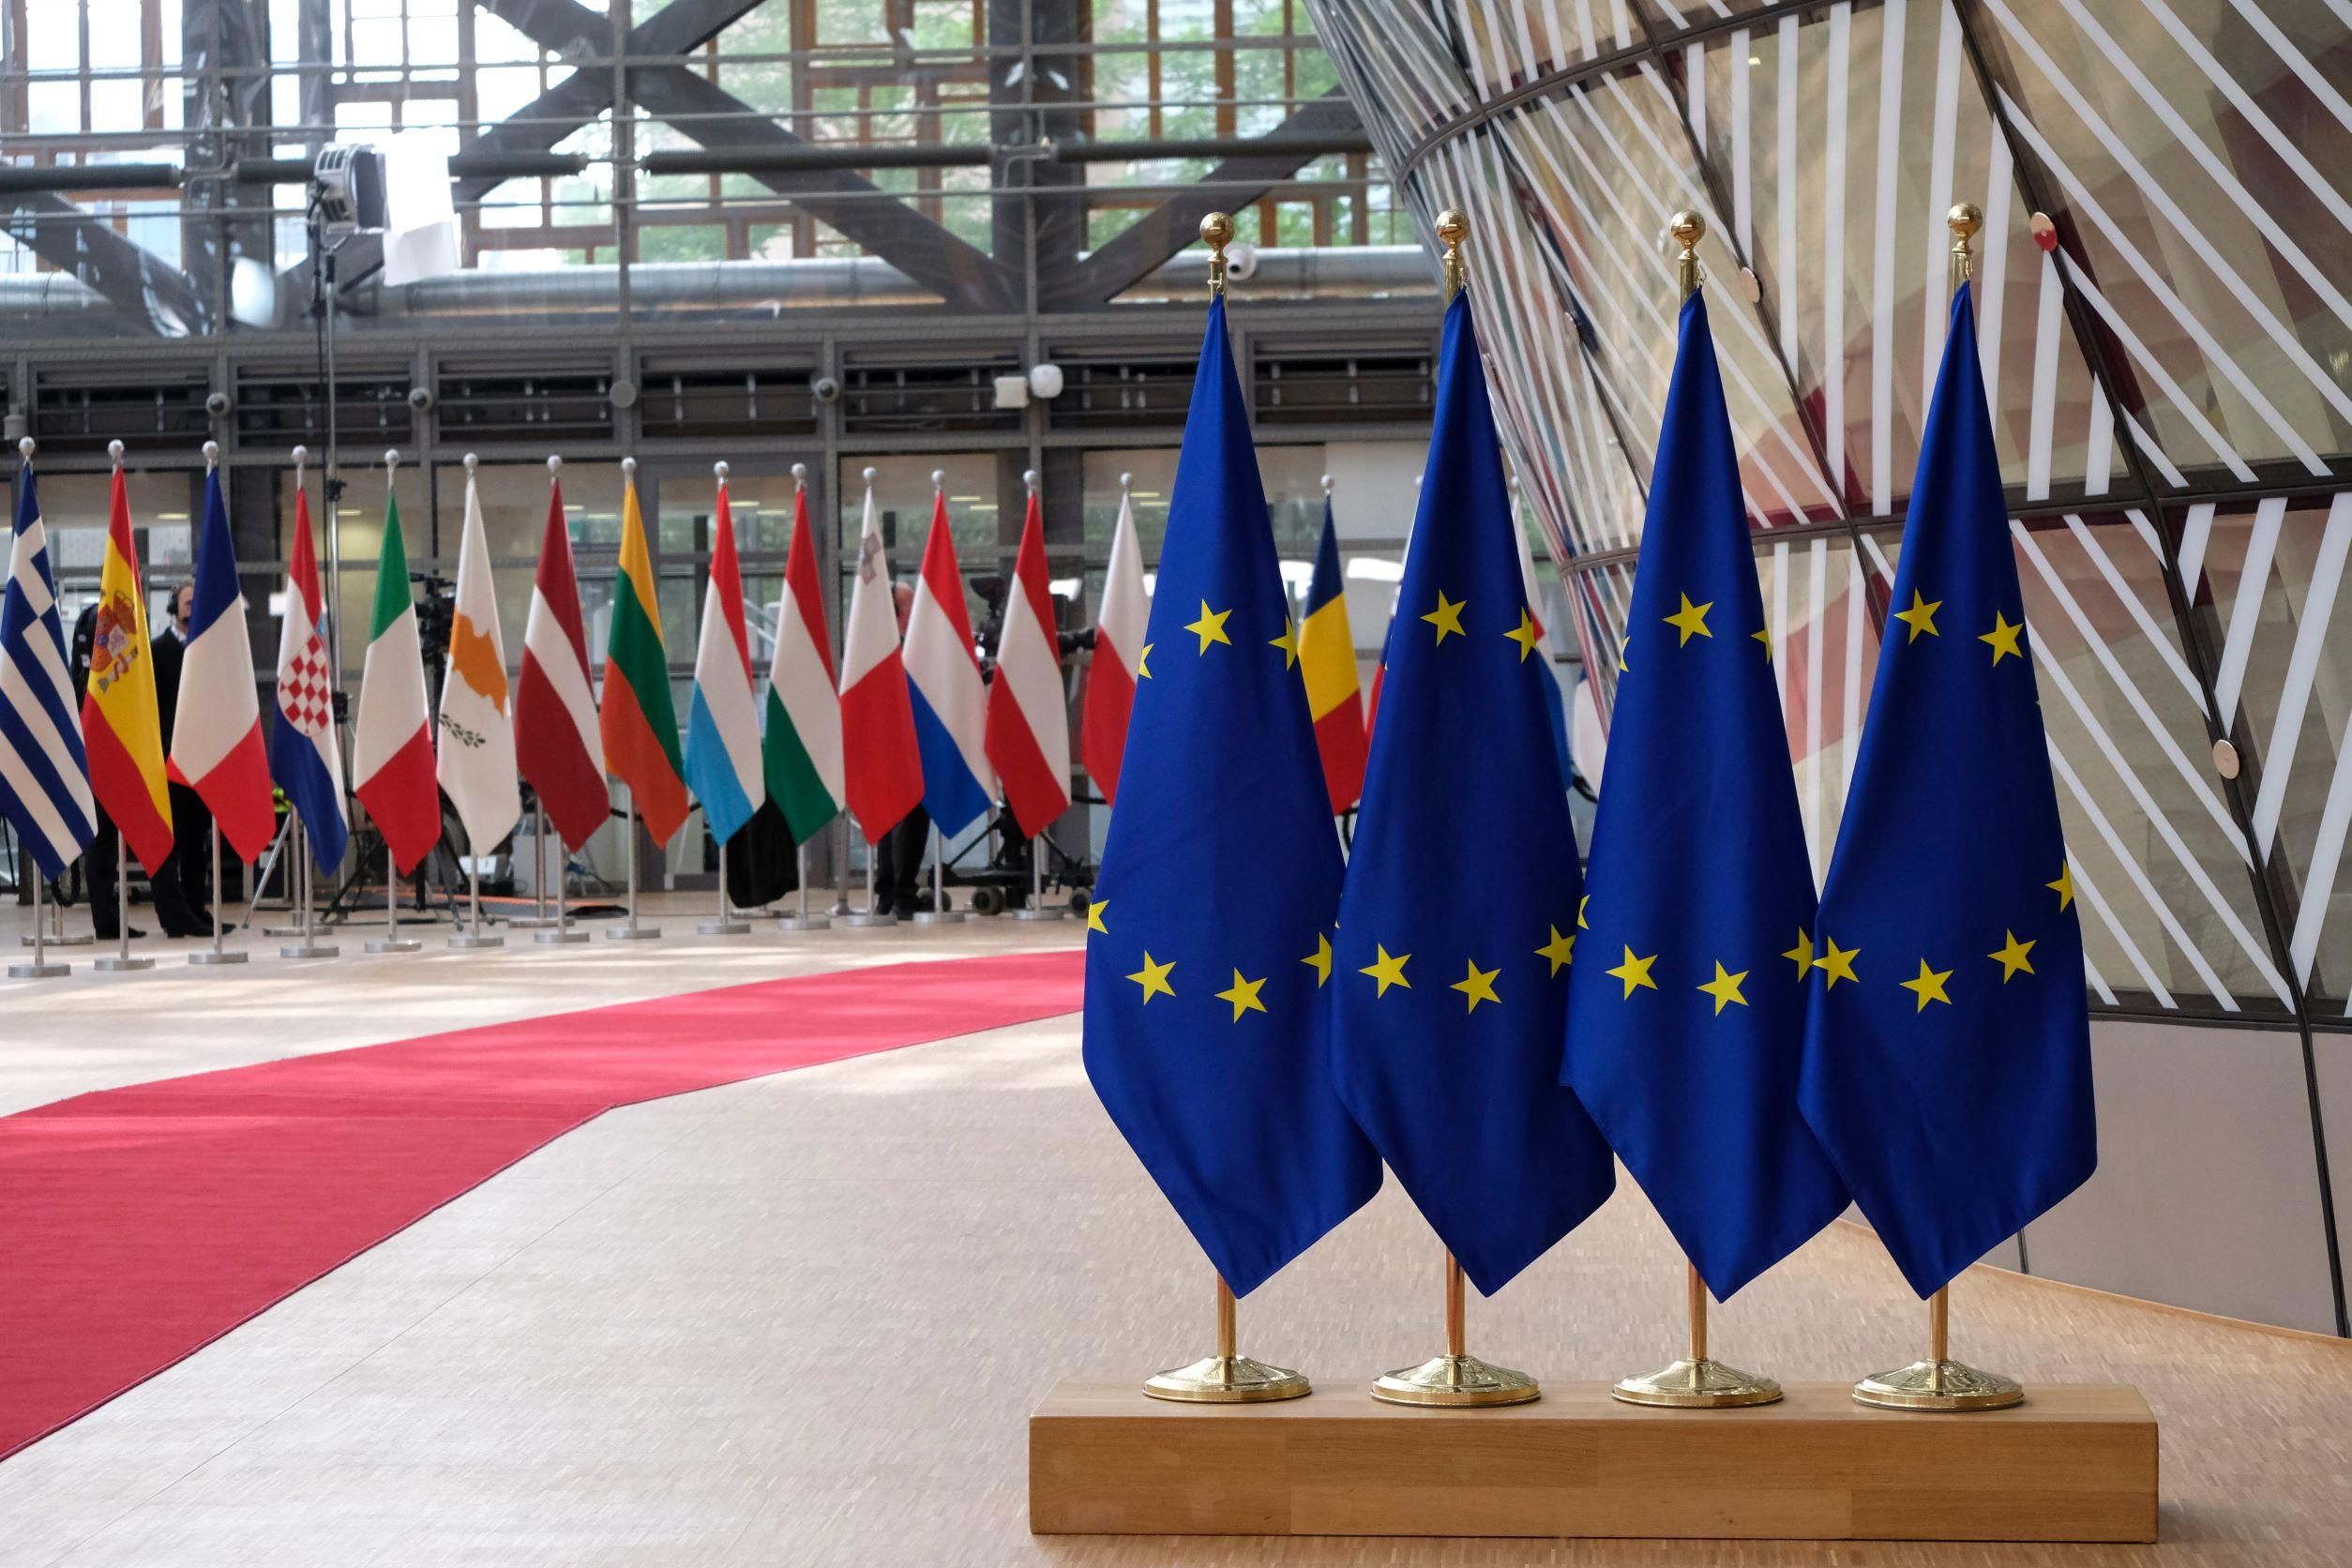 Ezt javasolja az Európai Bizottság a tagállamoknak a Magyarországnak járó pénzügyi források ügyében